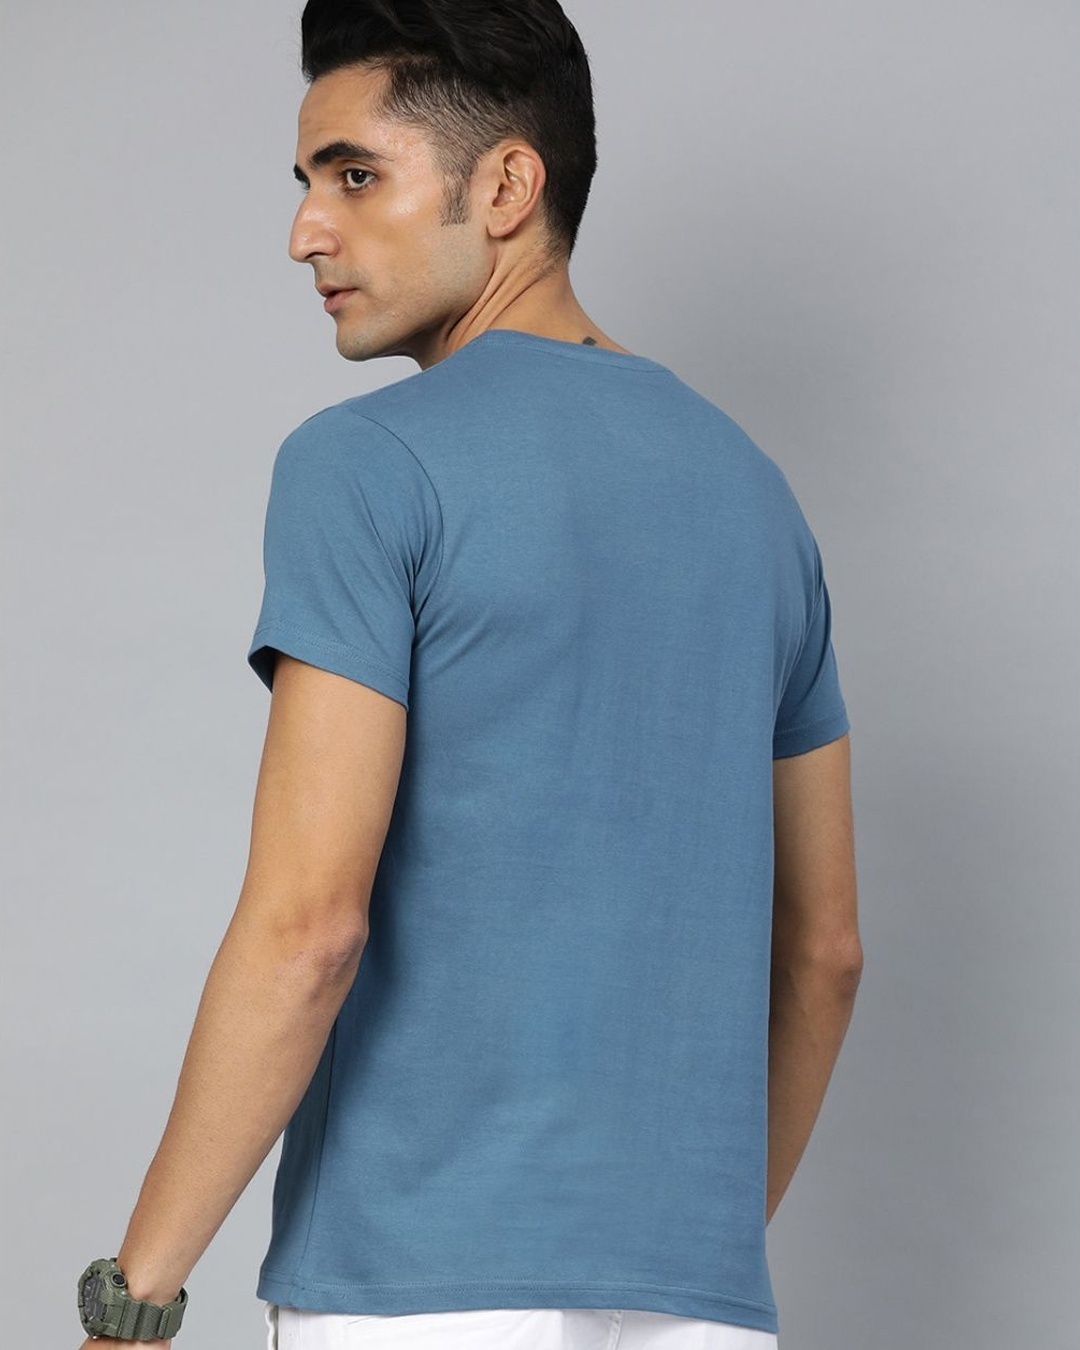 Shop Blue Graphic T Shirt-Back